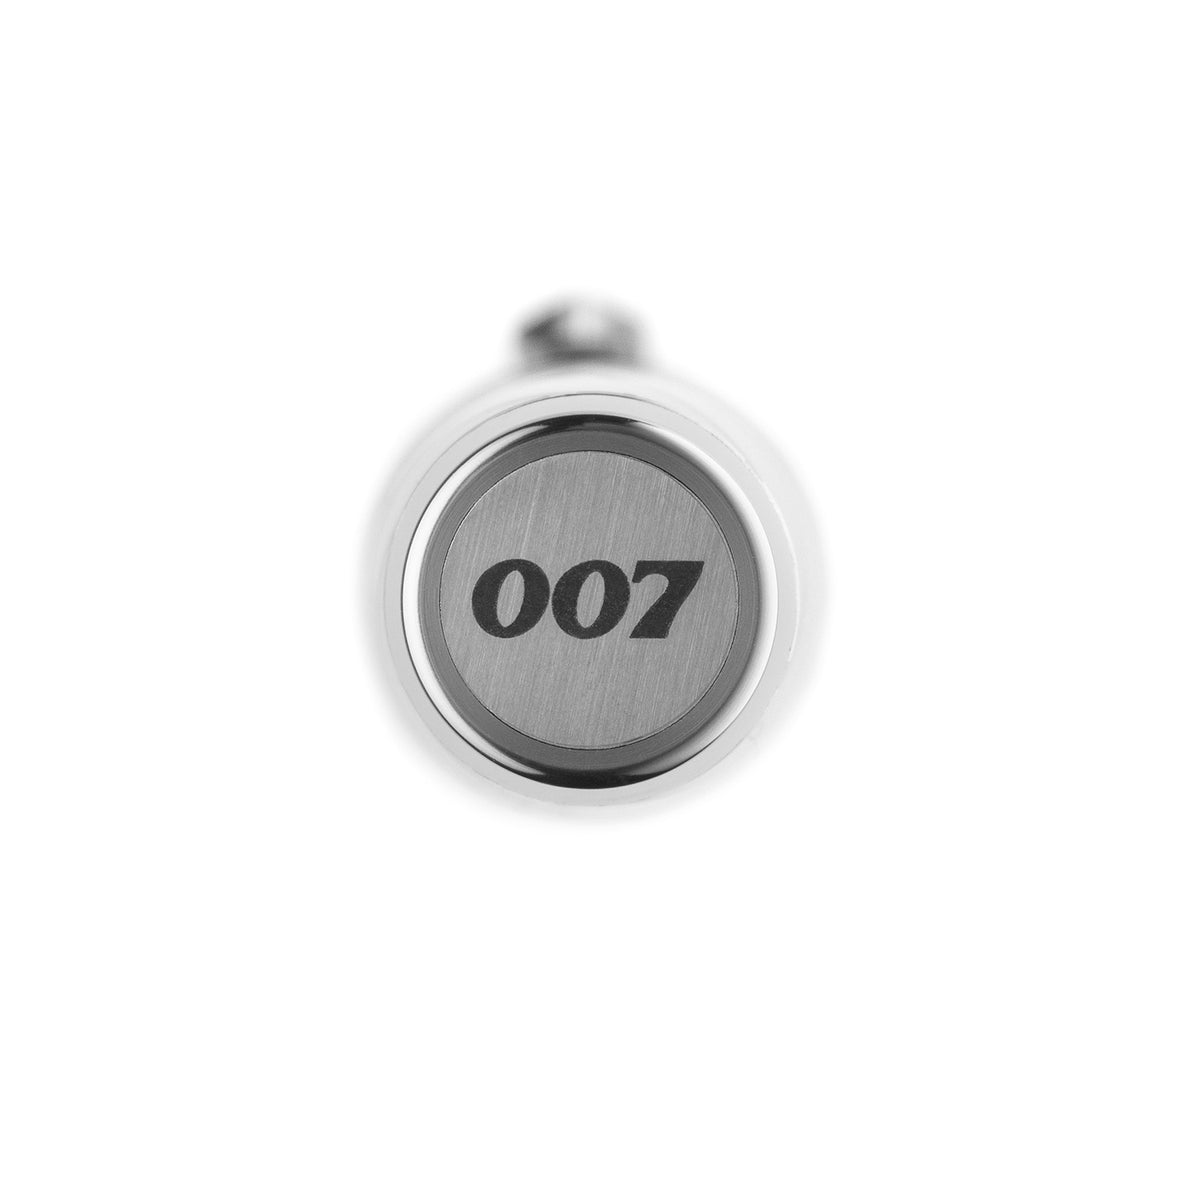 James Bond 007 Spymaster Duo Füllfederhalter - Nummerierte Edition - Von Montegrappa